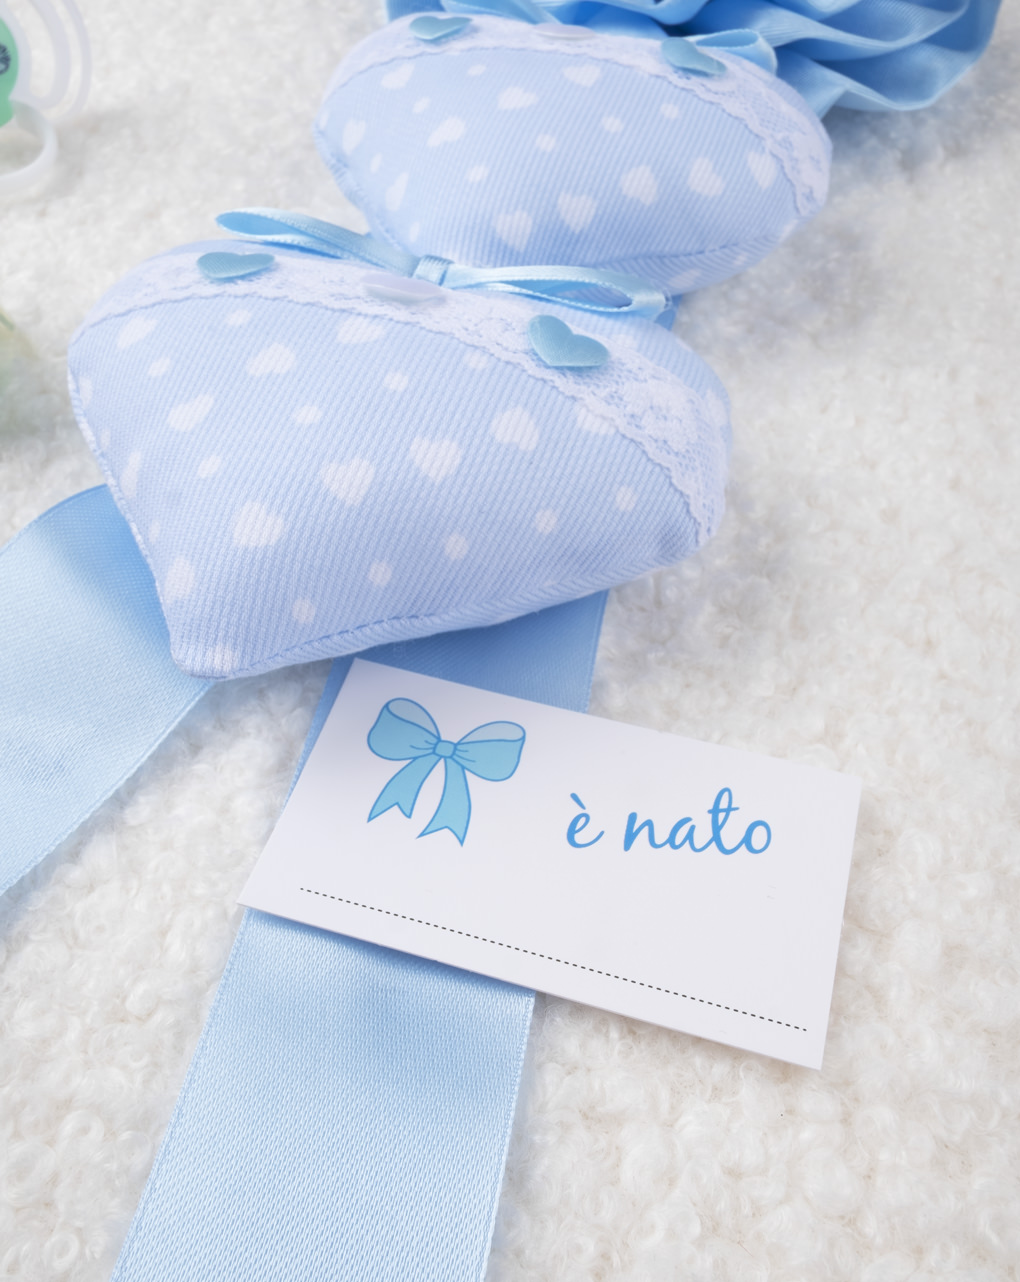 βρεφικό φιογκάκι μπλε για νεογέννητο αγόρι - Prénatal